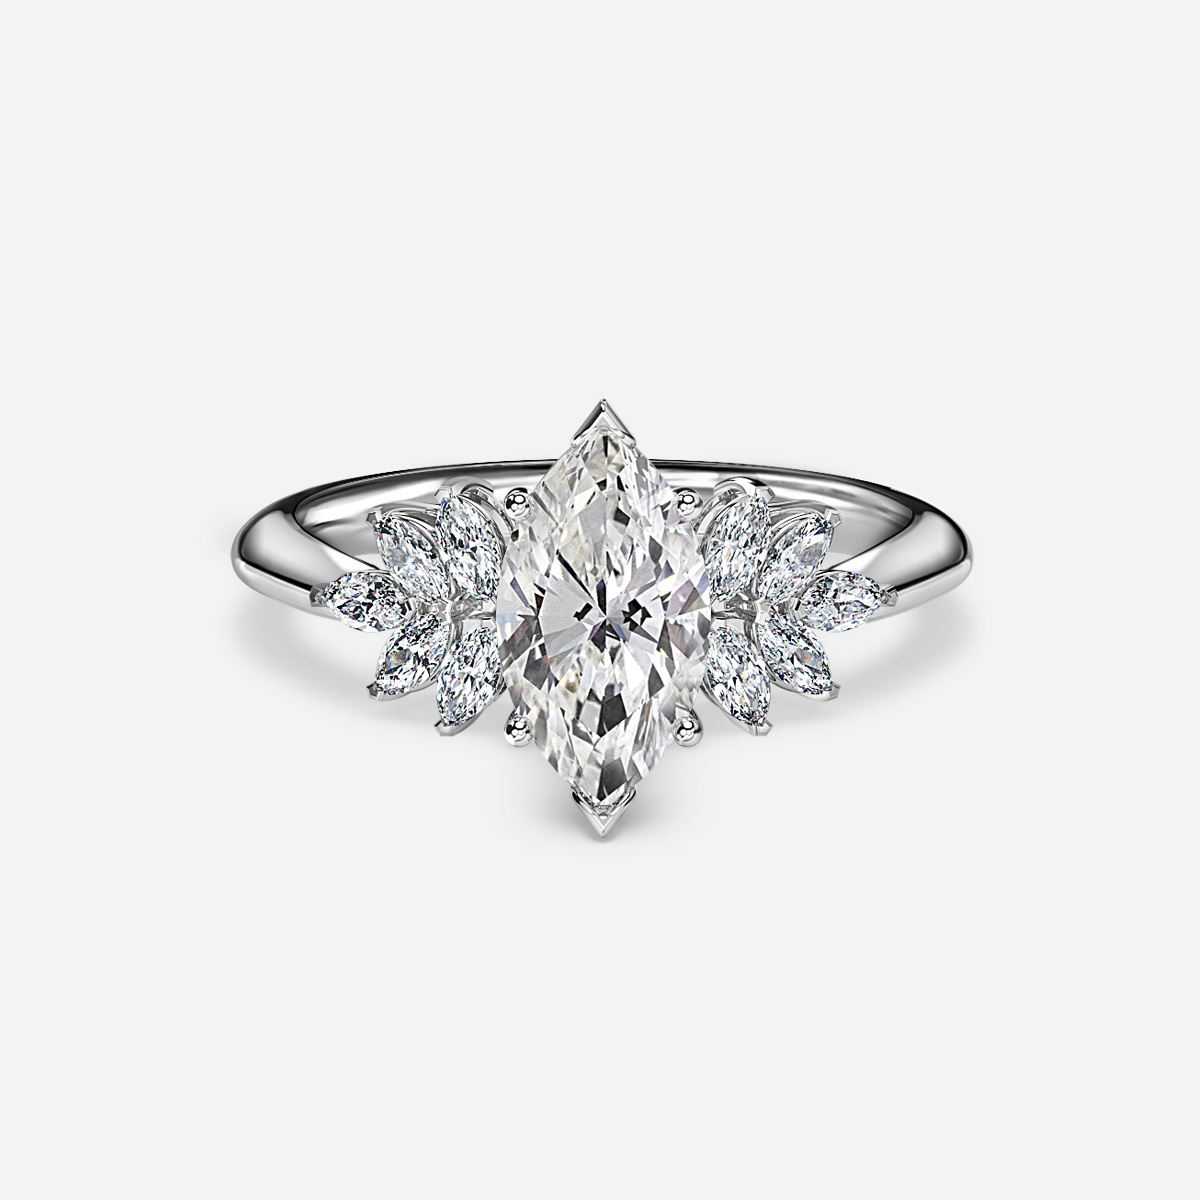 Anastasia White Gold Unique Engagement Ring